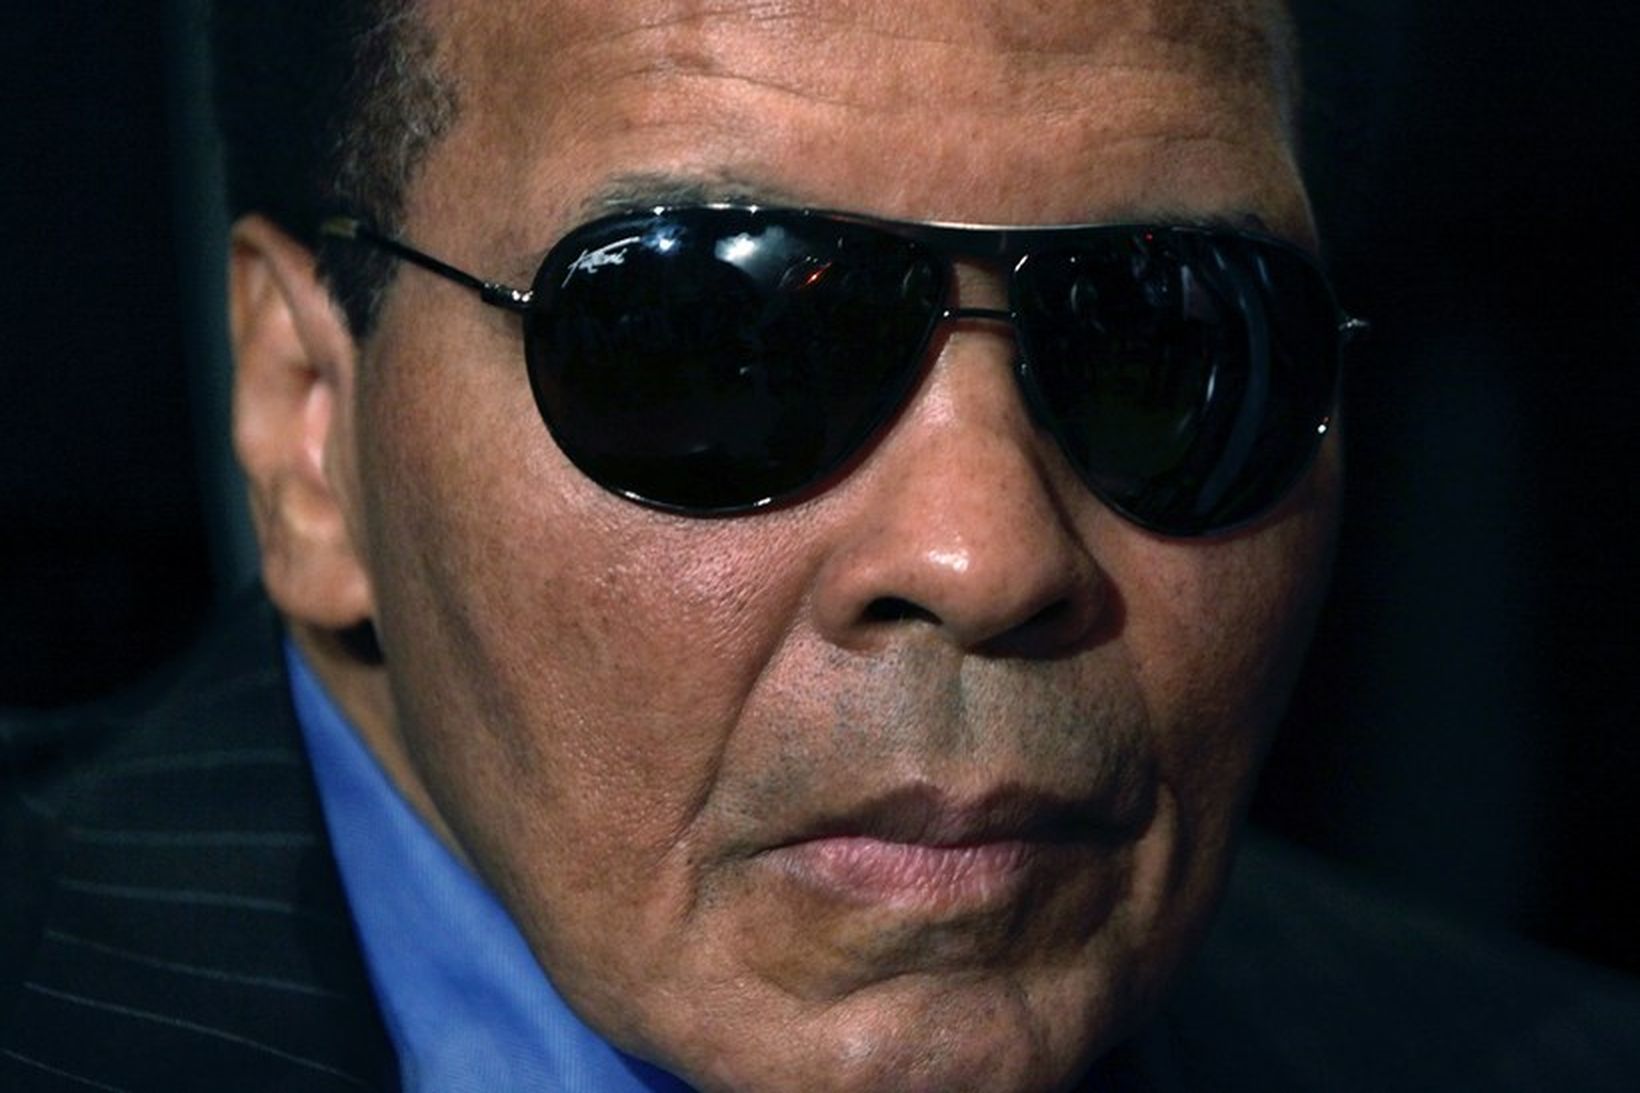 Muhammad Ali.